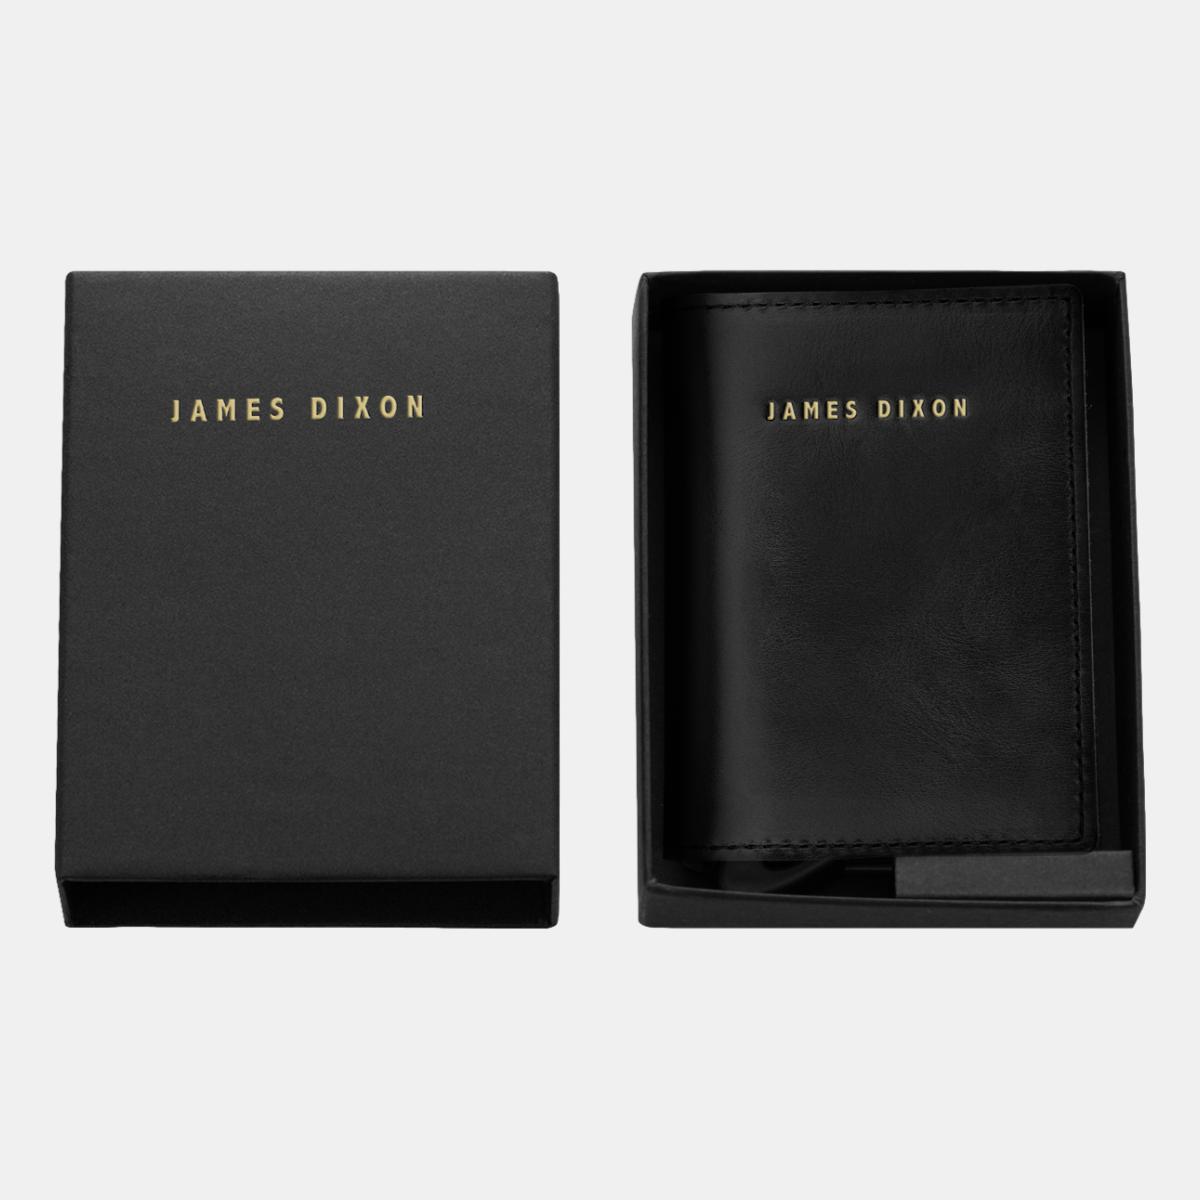 jd0002 james dixon puro classic black gold wallet box